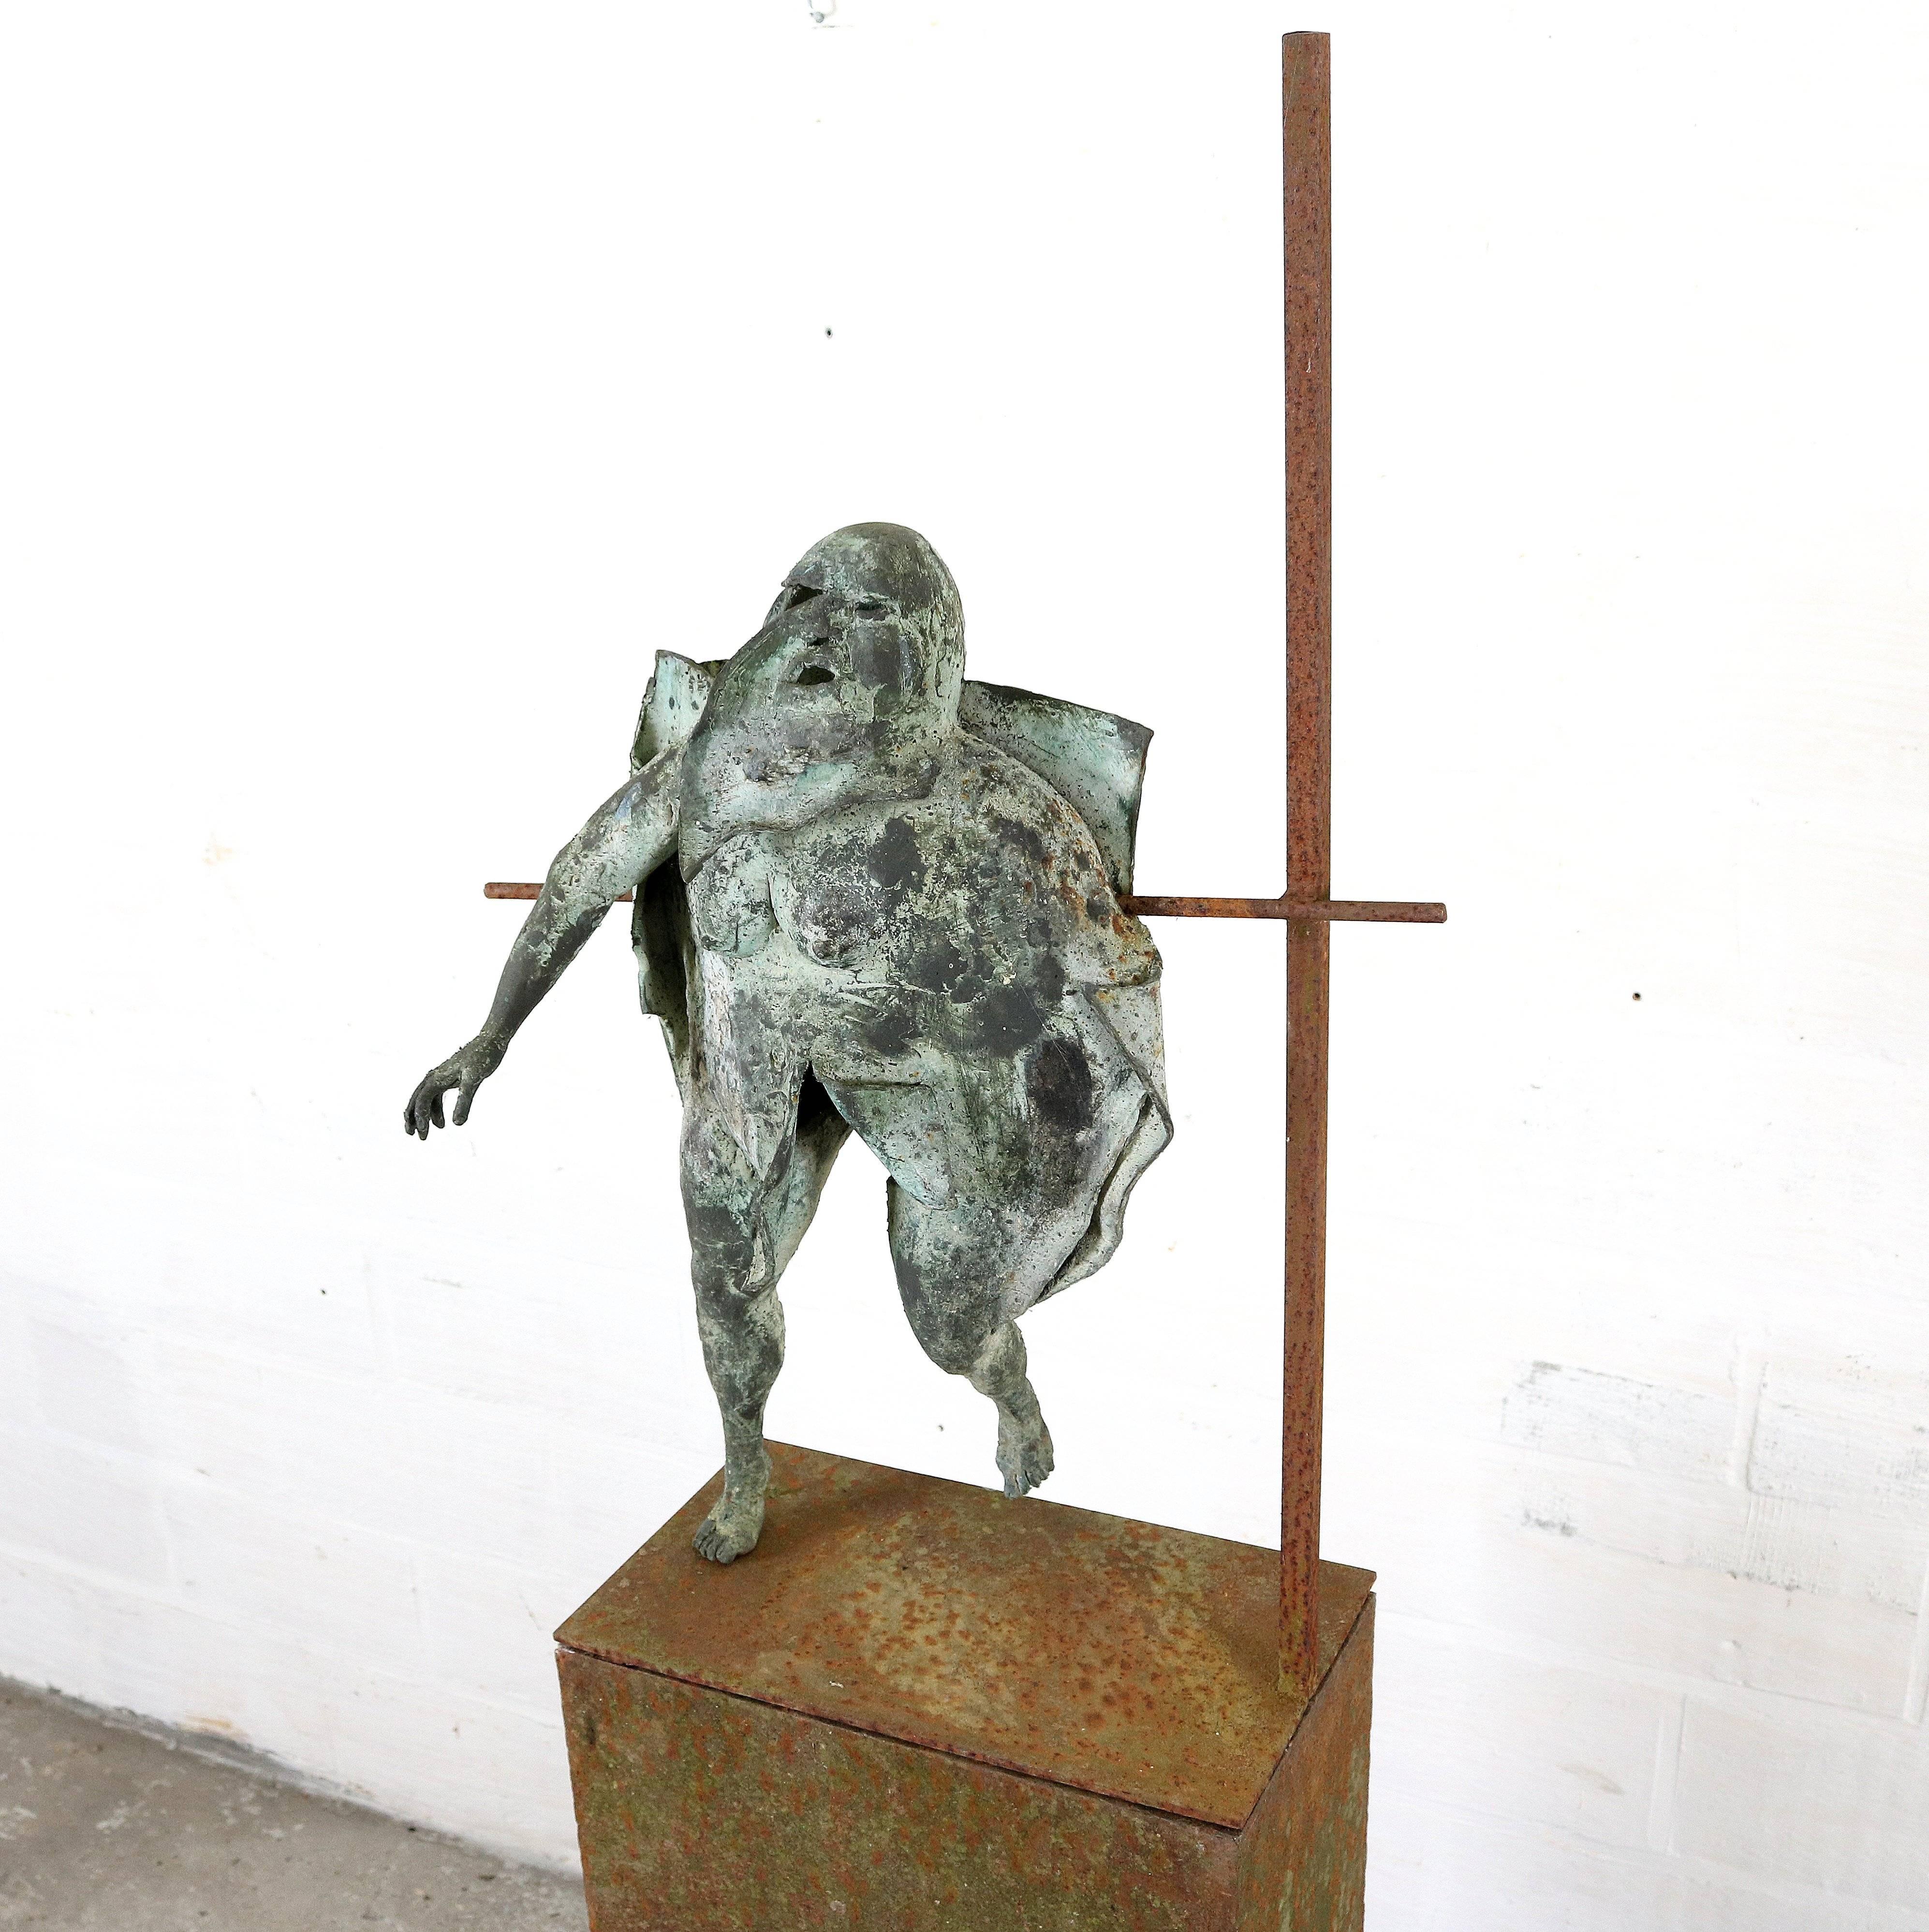 Artwork by Belgian artist Eric Dejonckheere.
Eric Dejonckheere was a student of José Vermeersch.
Made of bronze on metal base.

Measures: Height 152 cm
Height sculpture 52 cm.